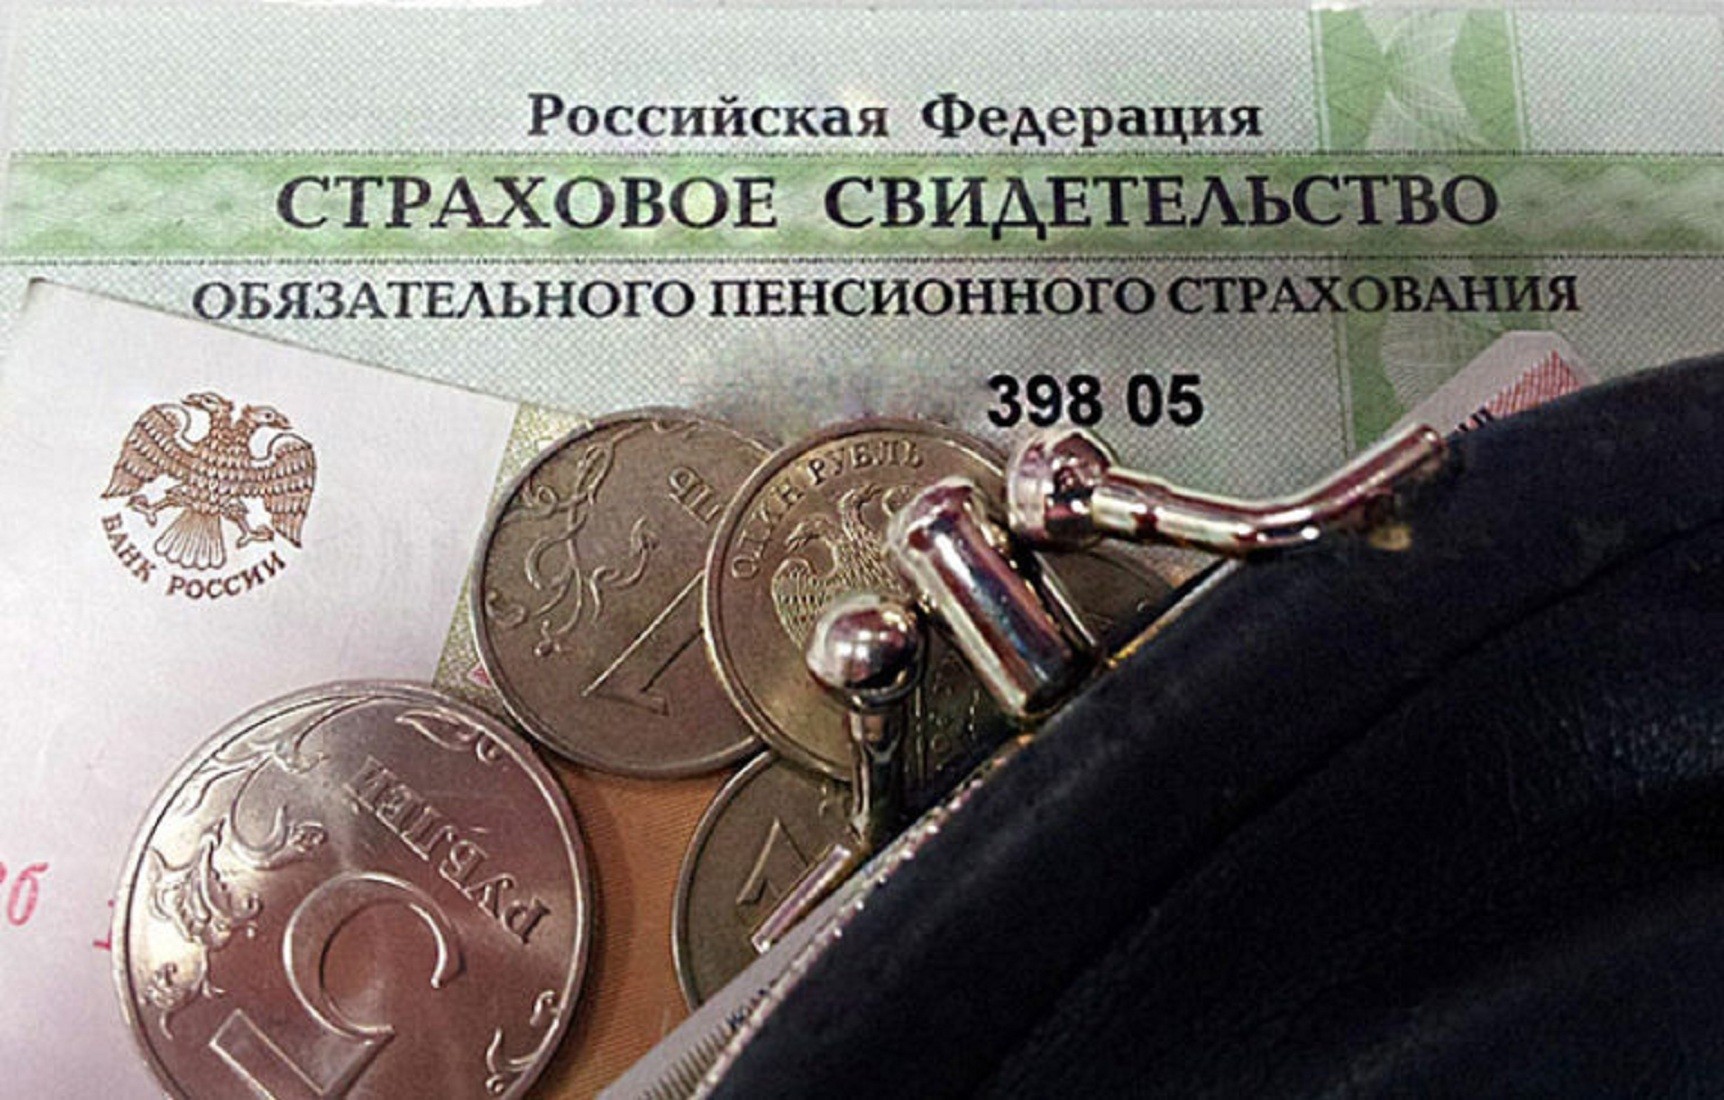 Пенсионное страхование в россии